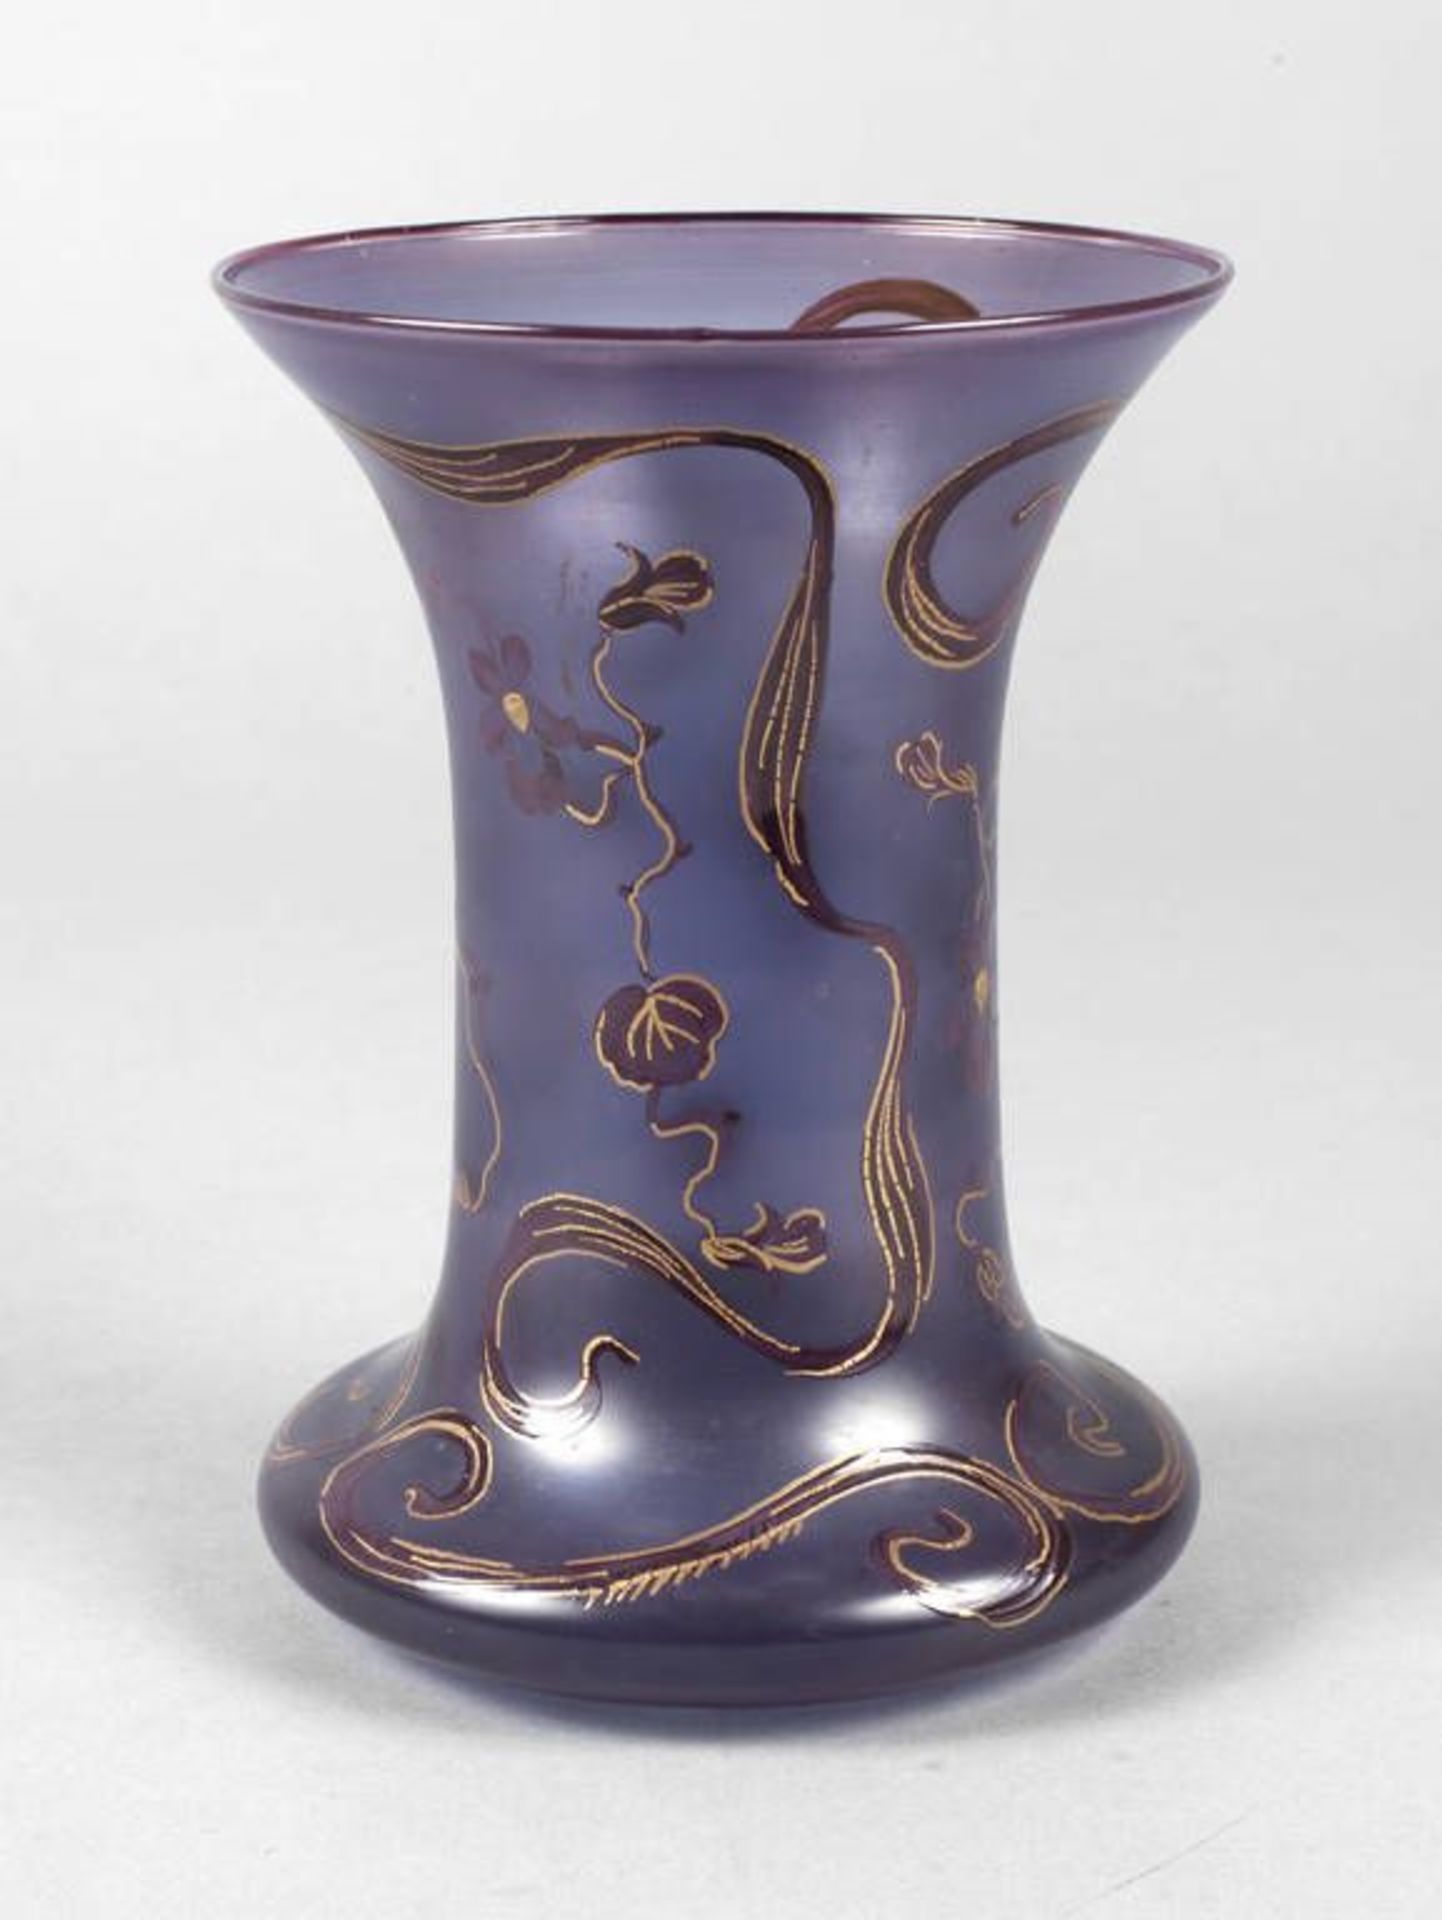 Jugendstilvase Floraldekor  um 1900, klares Glas, formgeblasen, Bemalung in Violett und Gold,